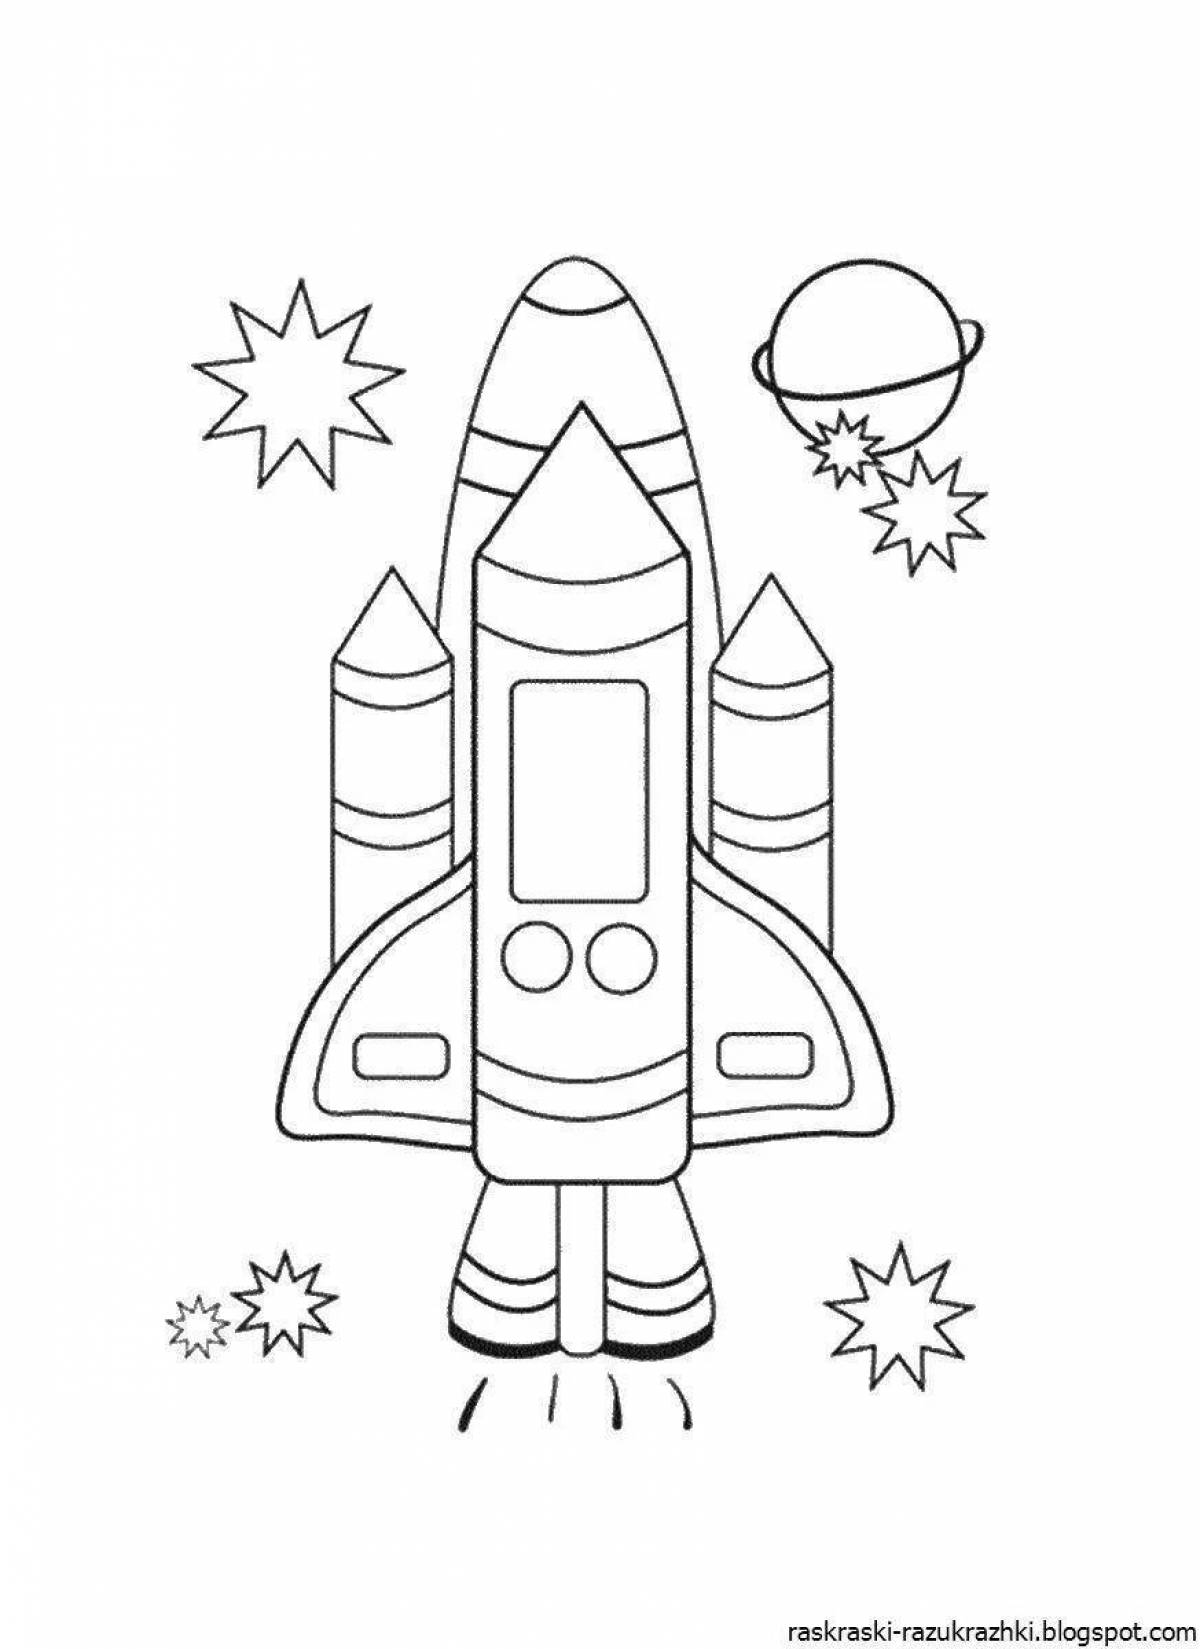 Увлекательная раскраска «ракета» для детей 4-5 лет